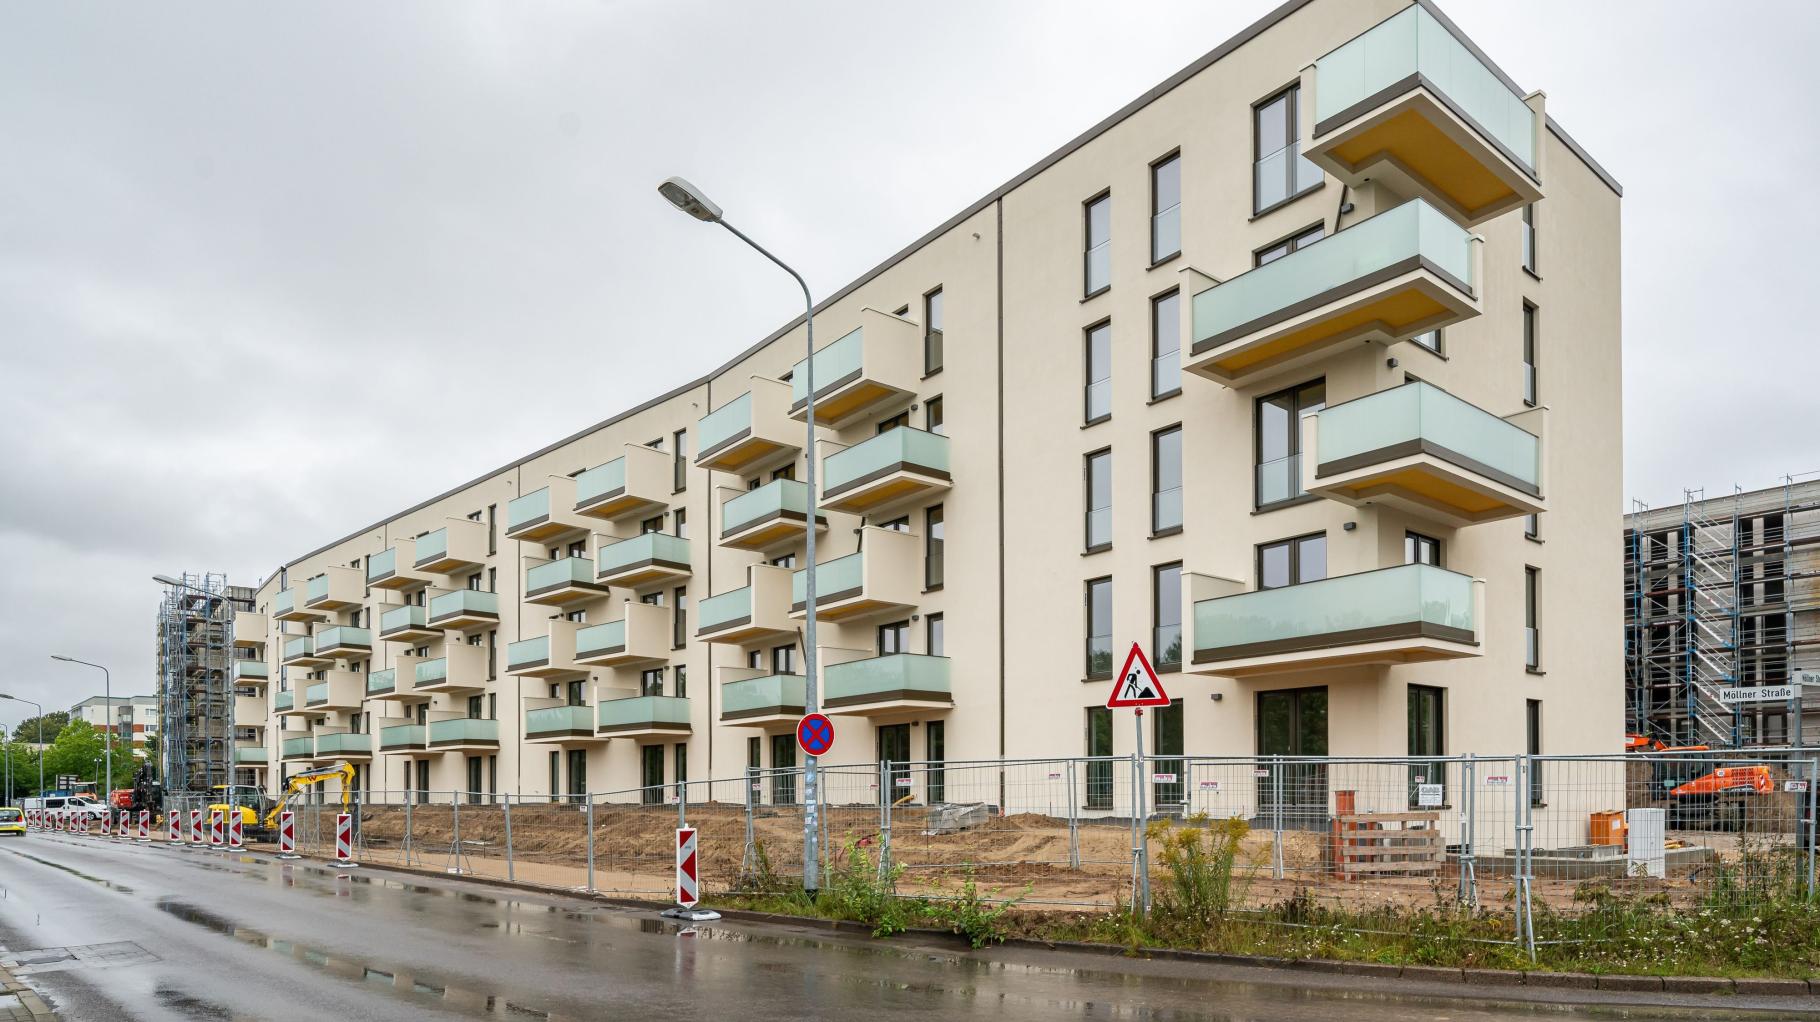 Bauen in Zeiten hoher Baukosten: So regelt das Rostocks größtes Wohnungsunternehmen